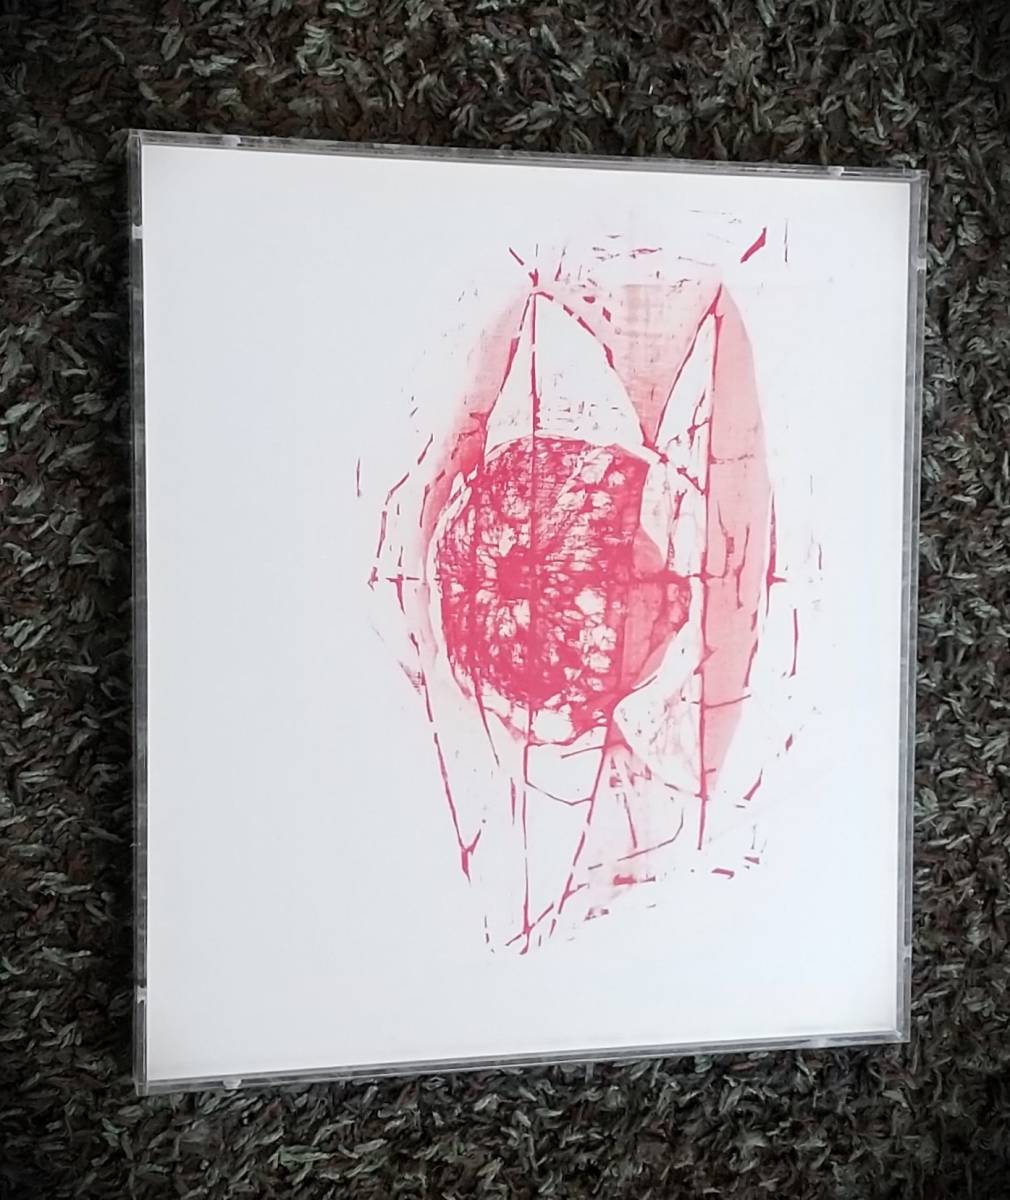 Seiichiro Miida una imagen de técnica mixta roja, producido en 2007, autografiado, marco acrílico único en su tipo [autenticidad garantizada] Moriichiro Miida, cuadro, acuarela, pintura abstracta